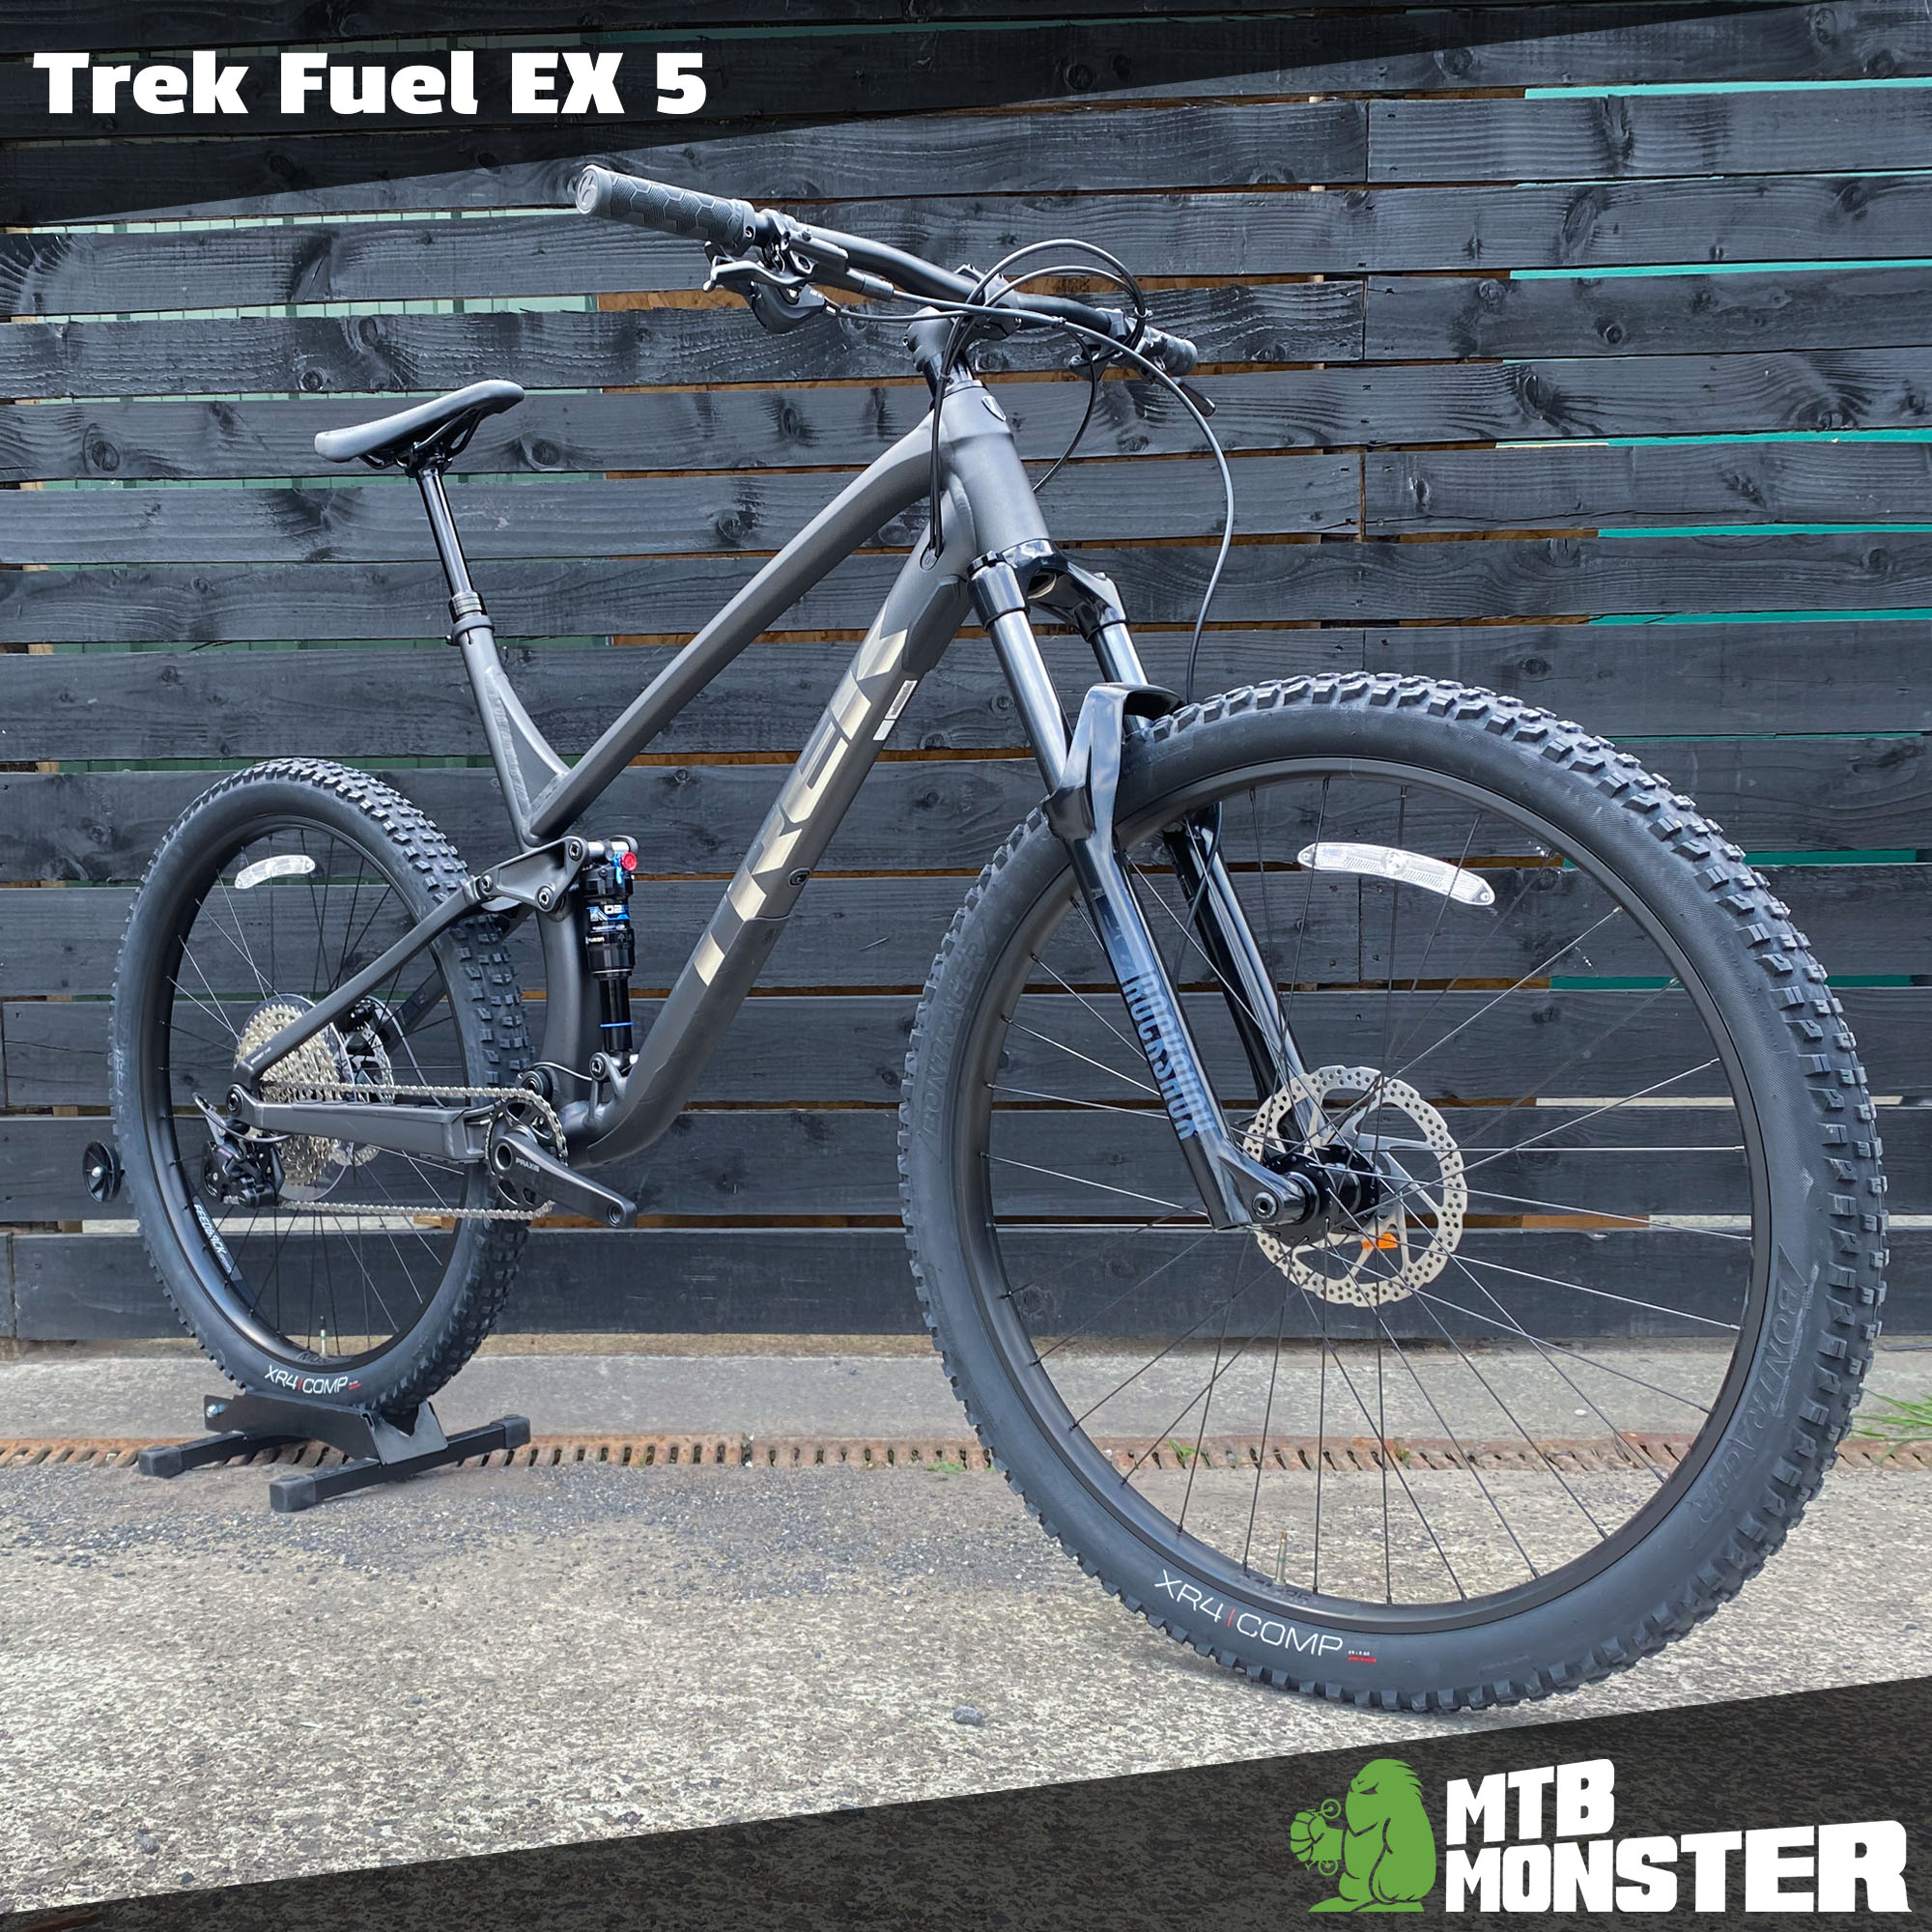 The Trek Fuel EX 5